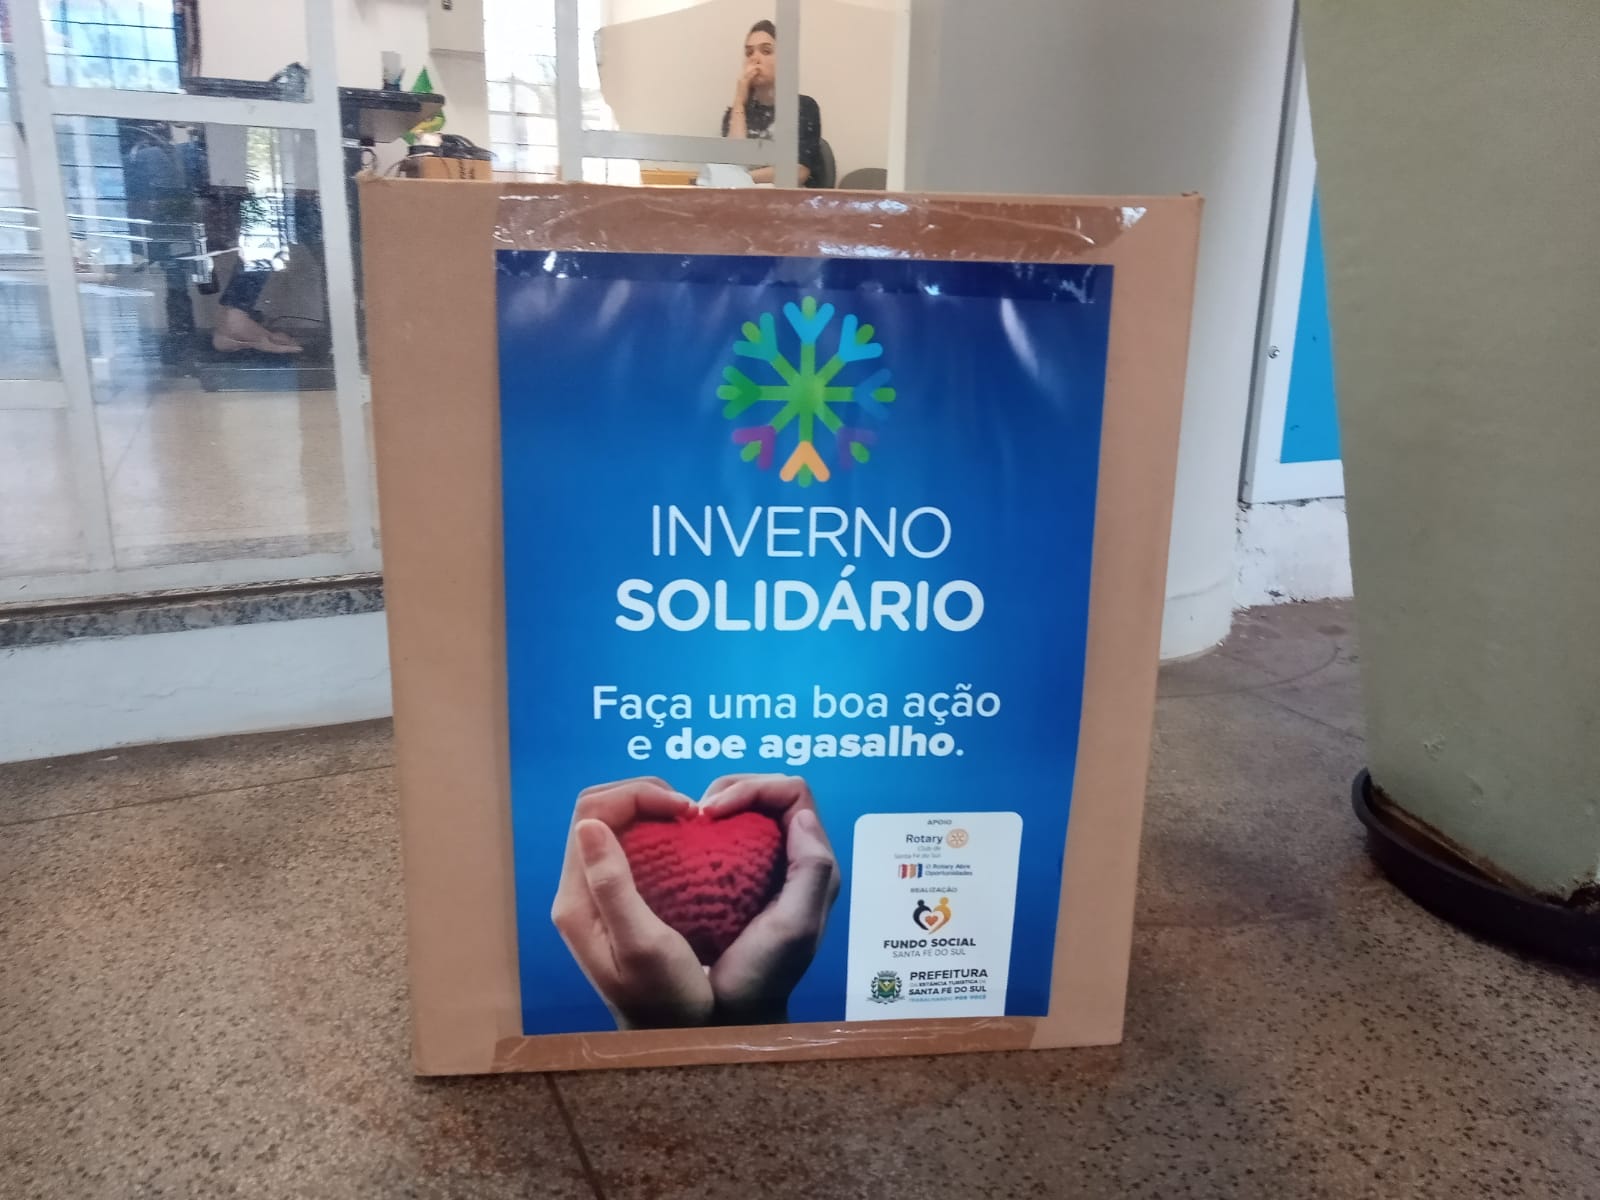 Fundo Social de Santa Fé do Sul inicia Campanha Inverno Solidário 2022